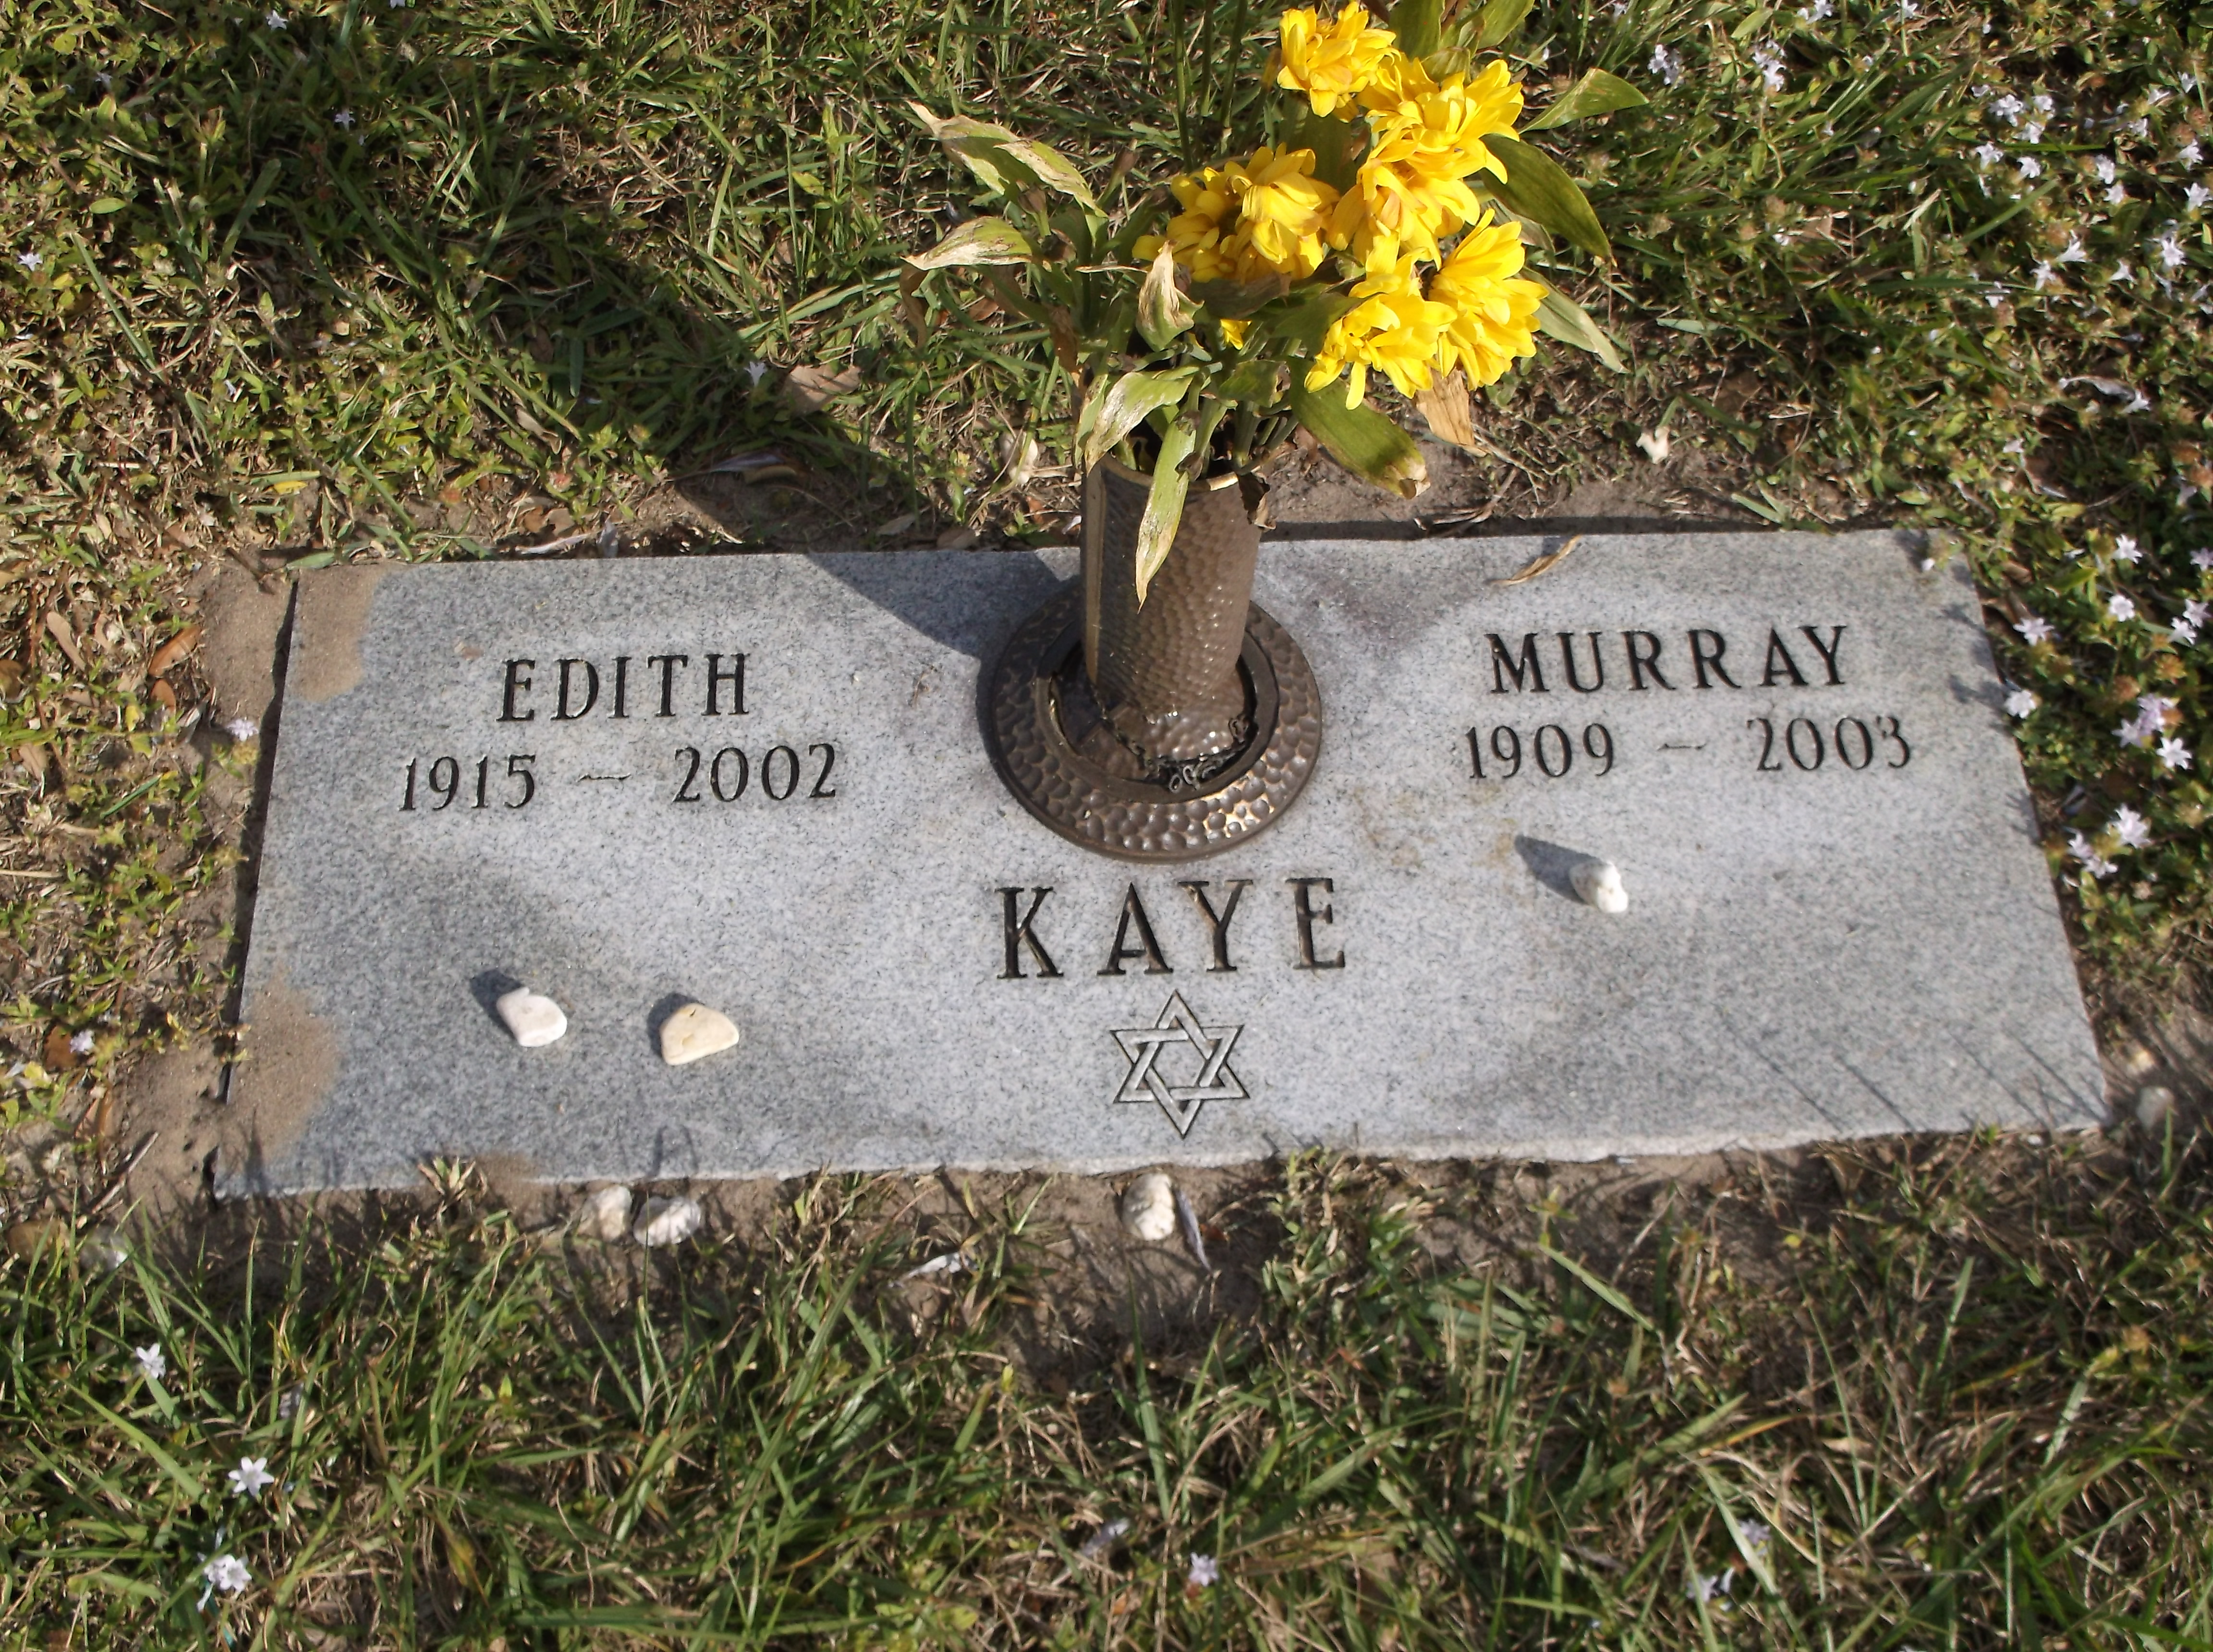 Murray Kaye